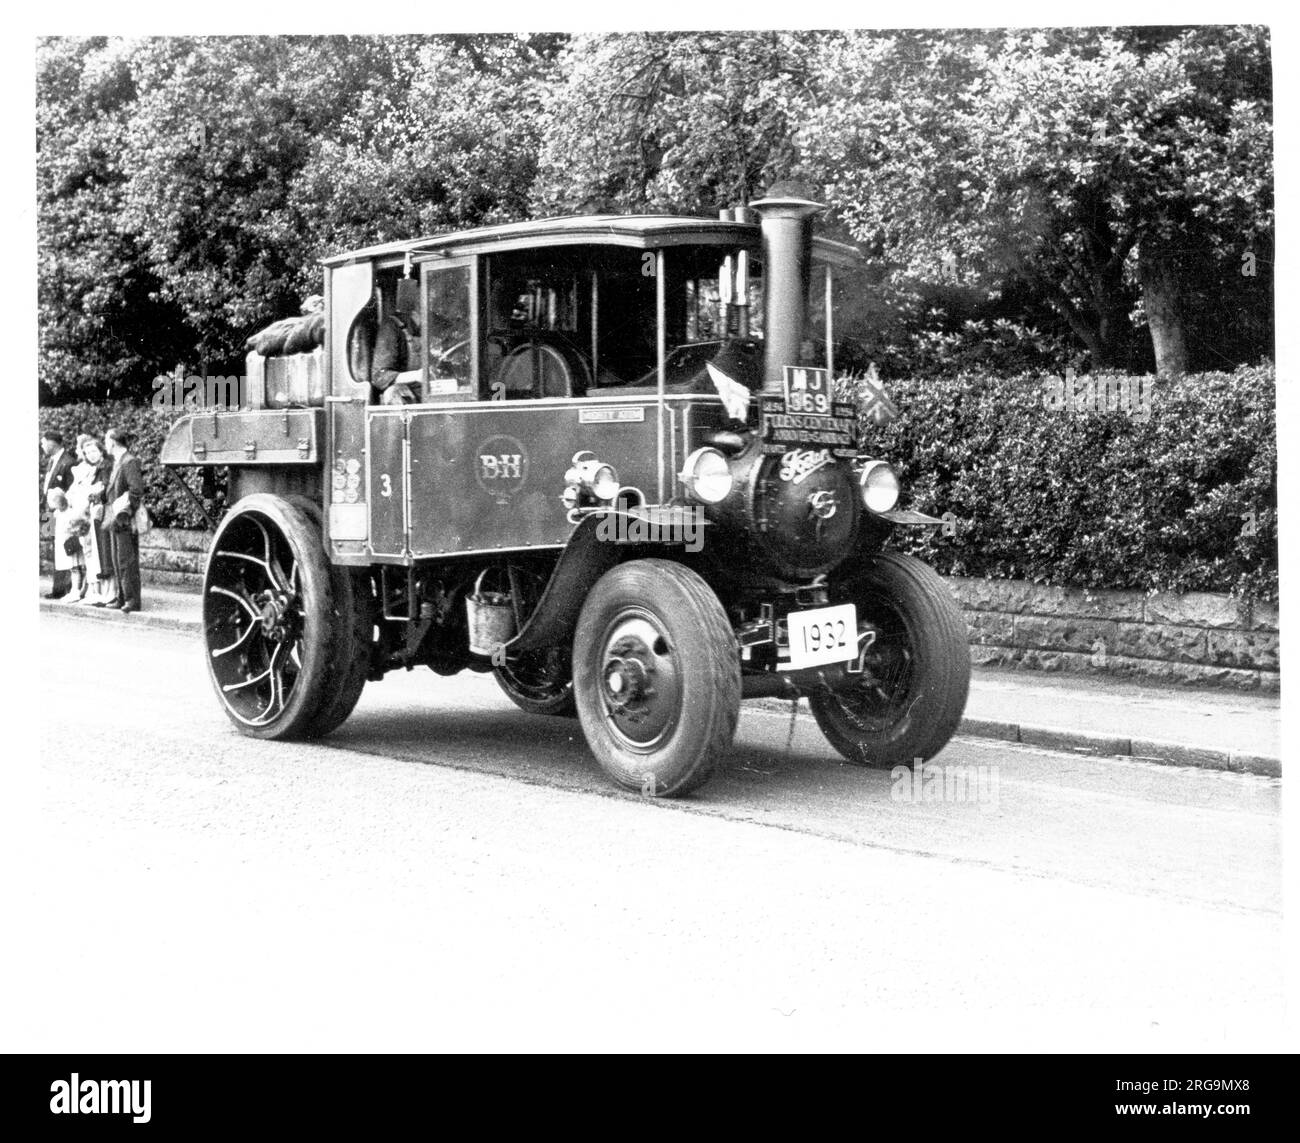 FODEN Traktor, Regn. MJ 369, Nummer: 14078, "Mighty Atom". Gebaut 1932 von Edwin Foden, Sons and Co von Elworth Works, Sandbach, angetrieben von einer 4 NHP-Dampfmaschine. Stockfoto